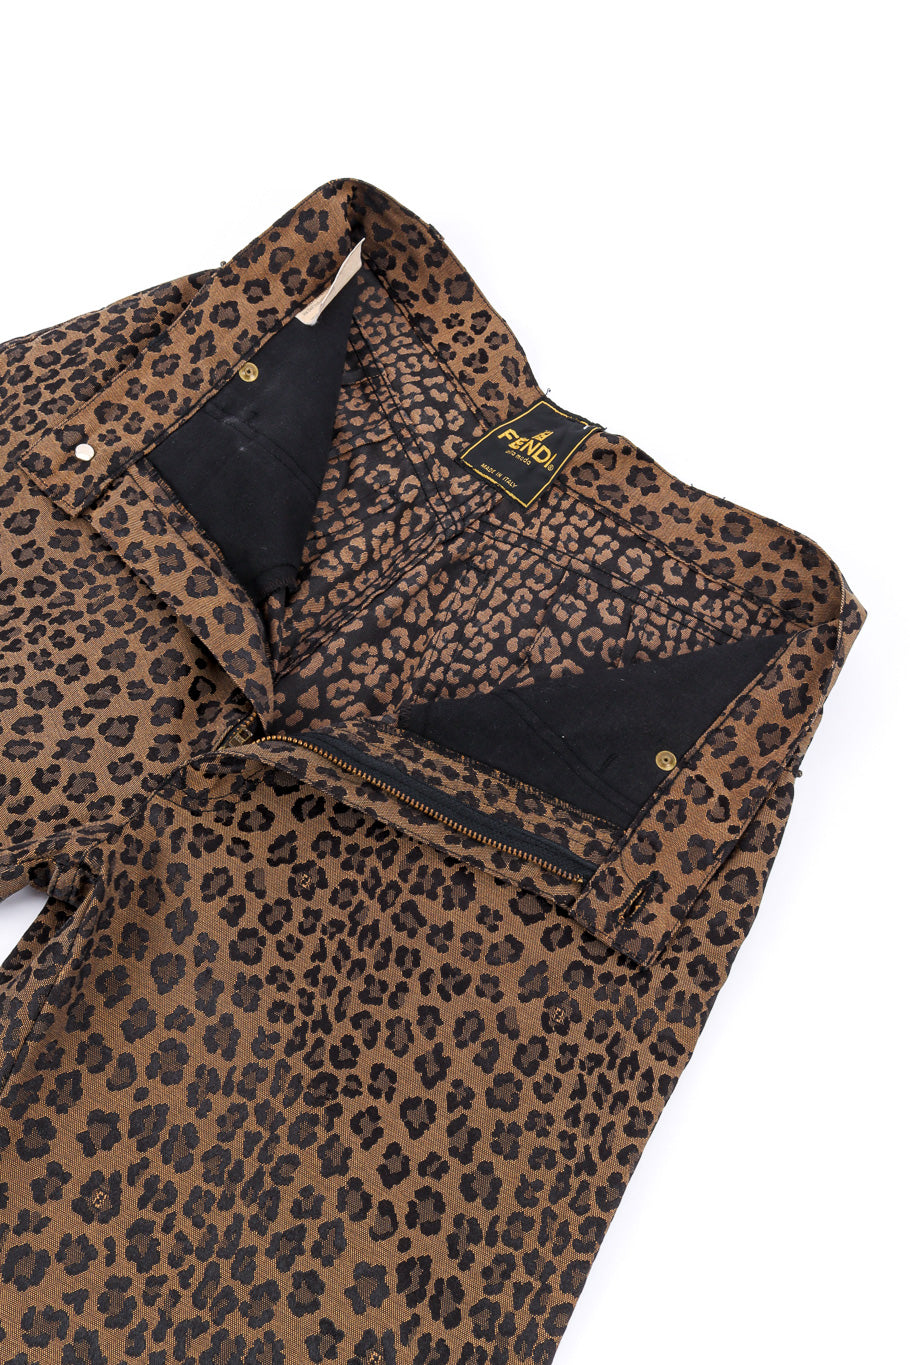 Twill Leopard Jean by Fendi unzipped @recessla